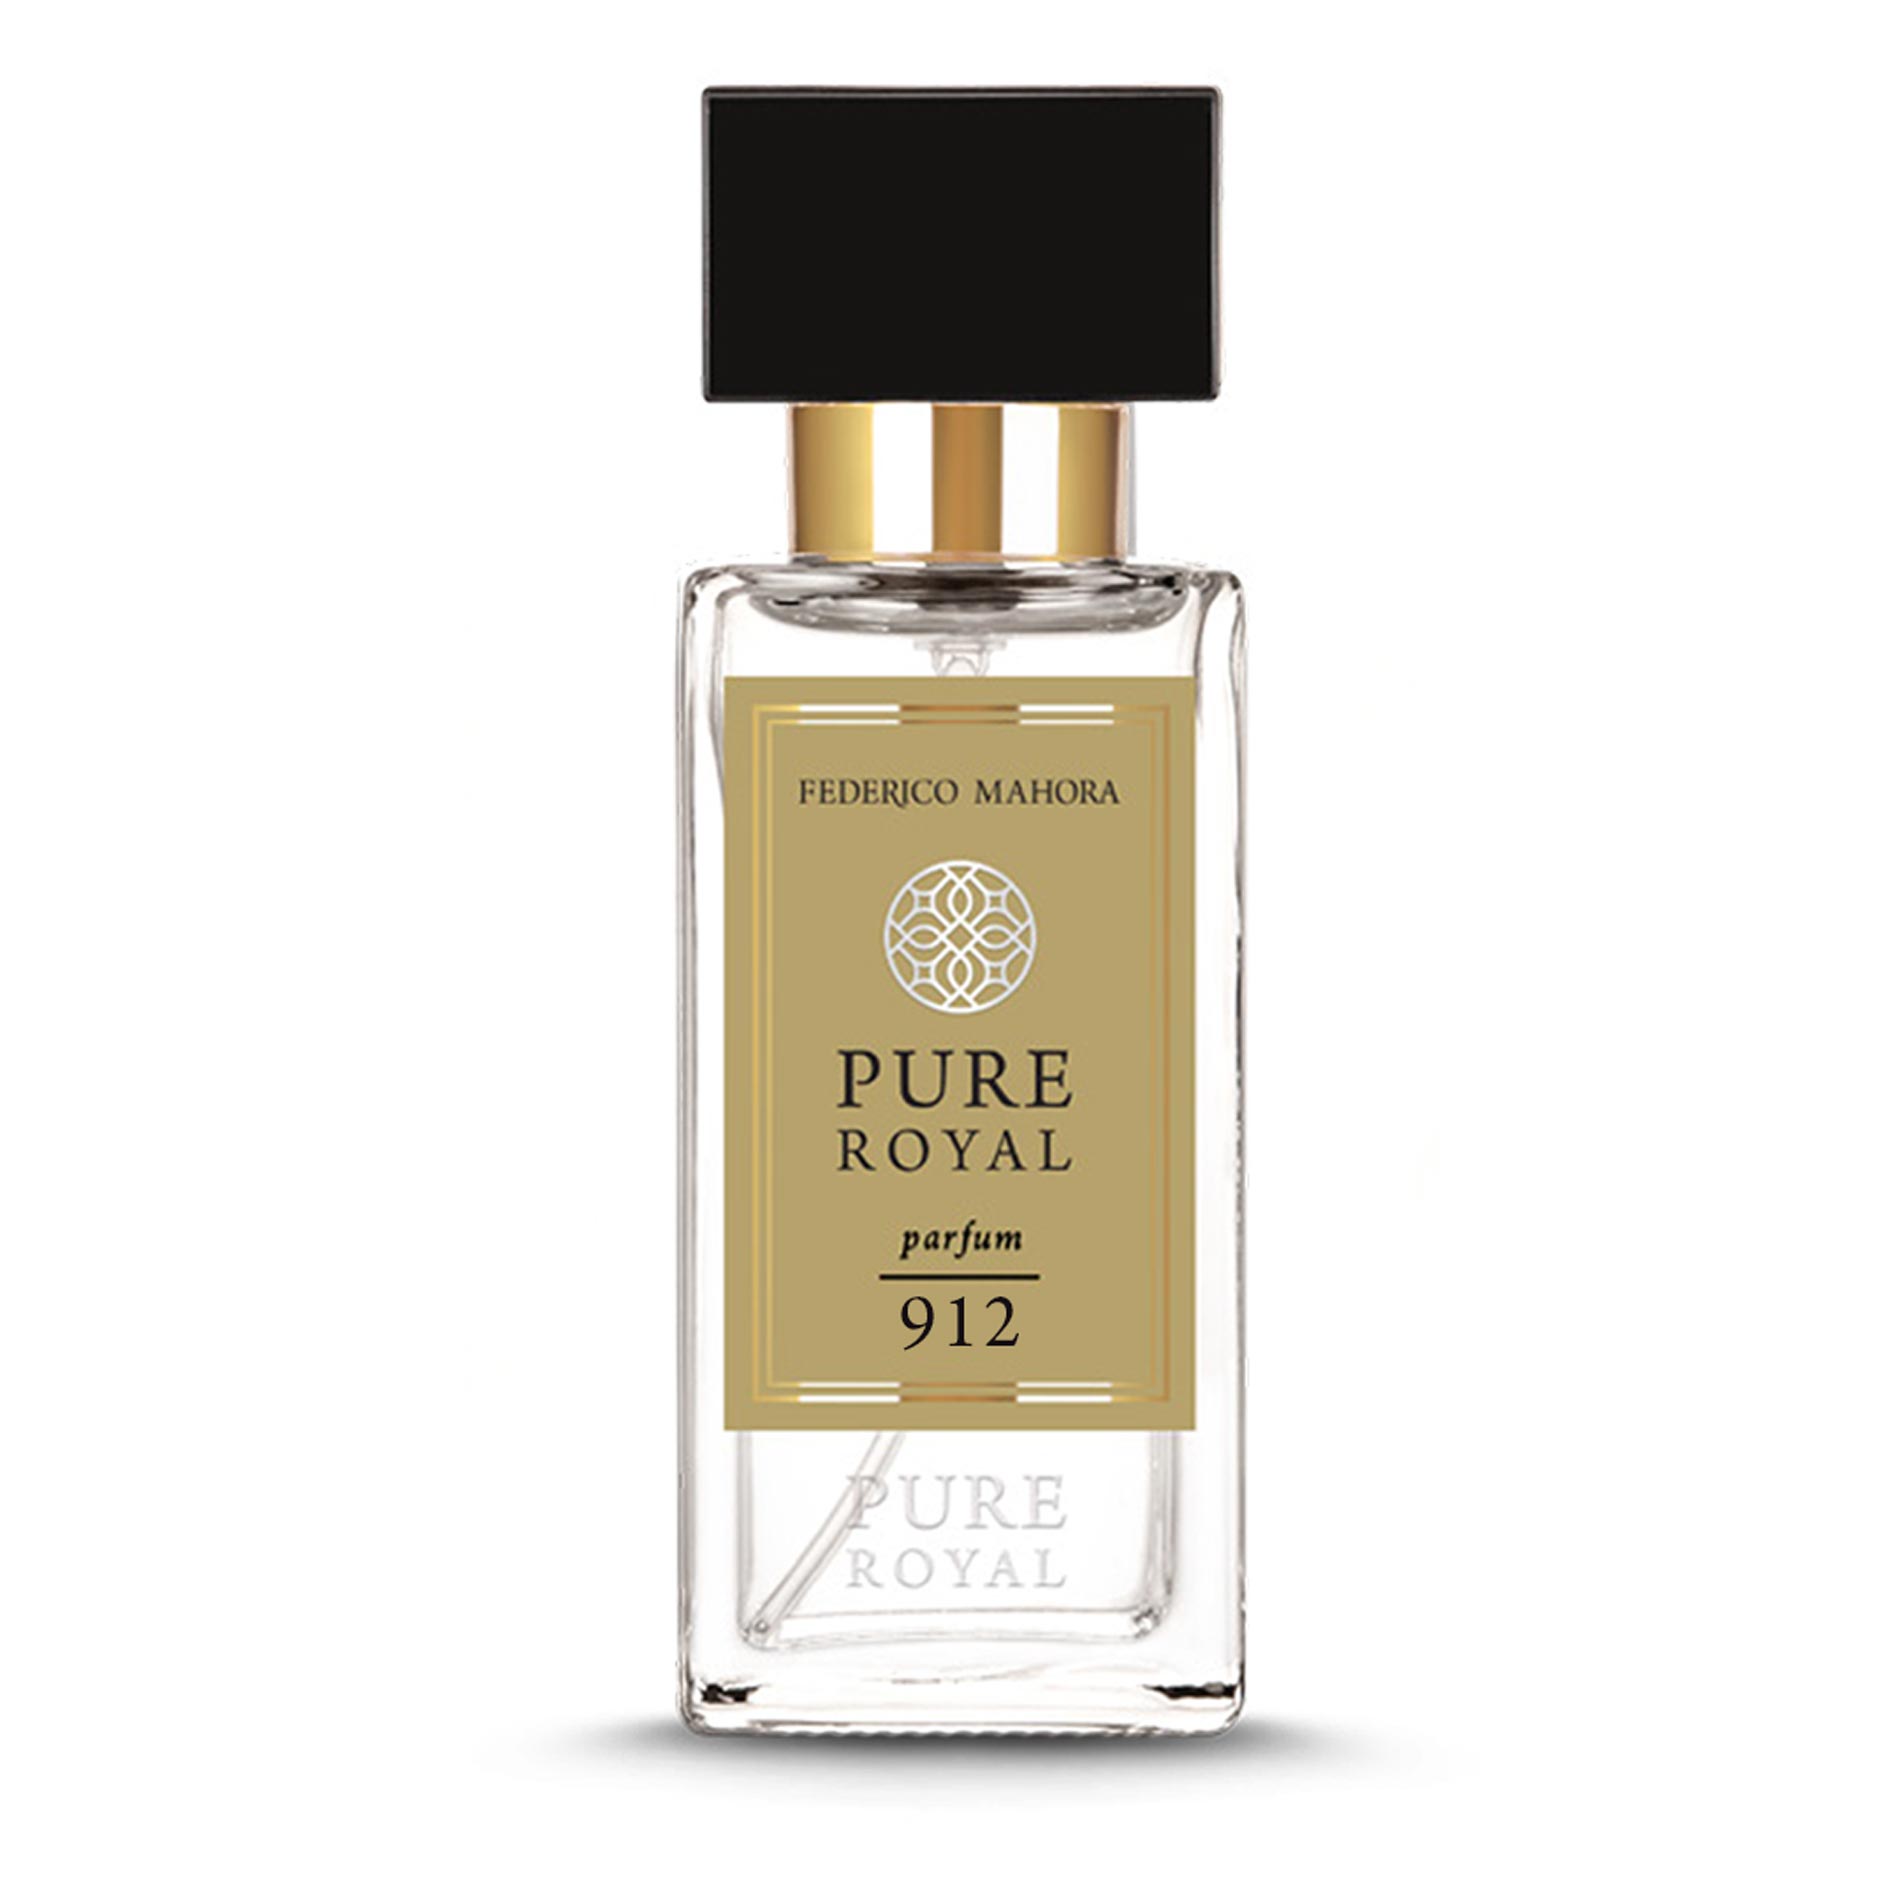 PURE ROYAL Parfum 912 Parfum